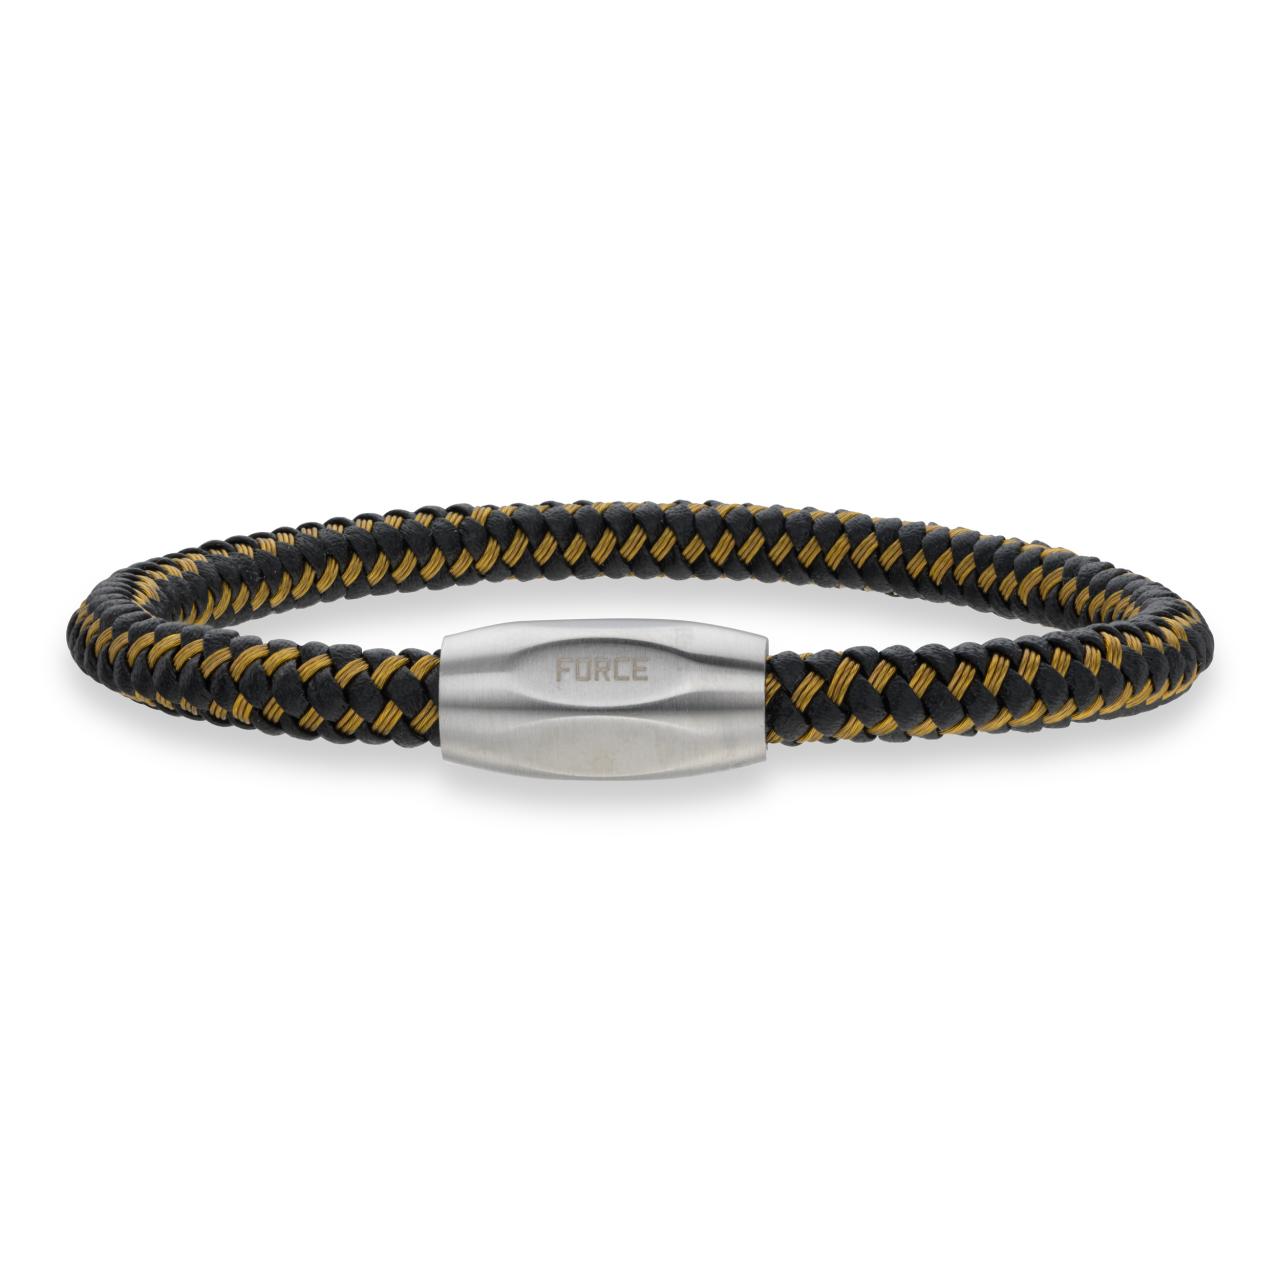 Force armbånd guld kabel/sort læder stål lås 23cm